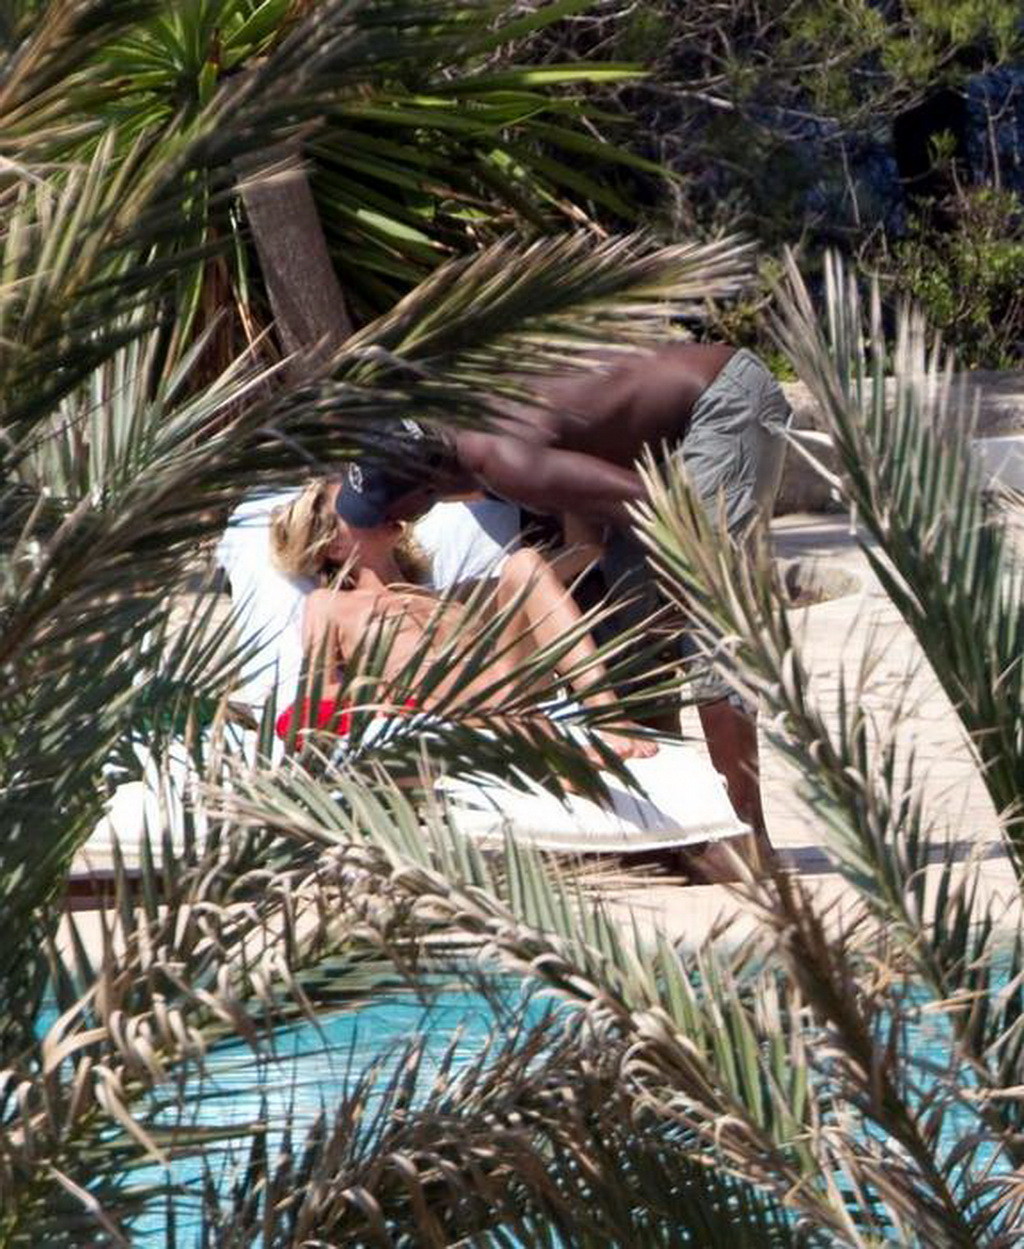 Heidi Klum caught sunbathing topless on vacation in Ibiza #75293244